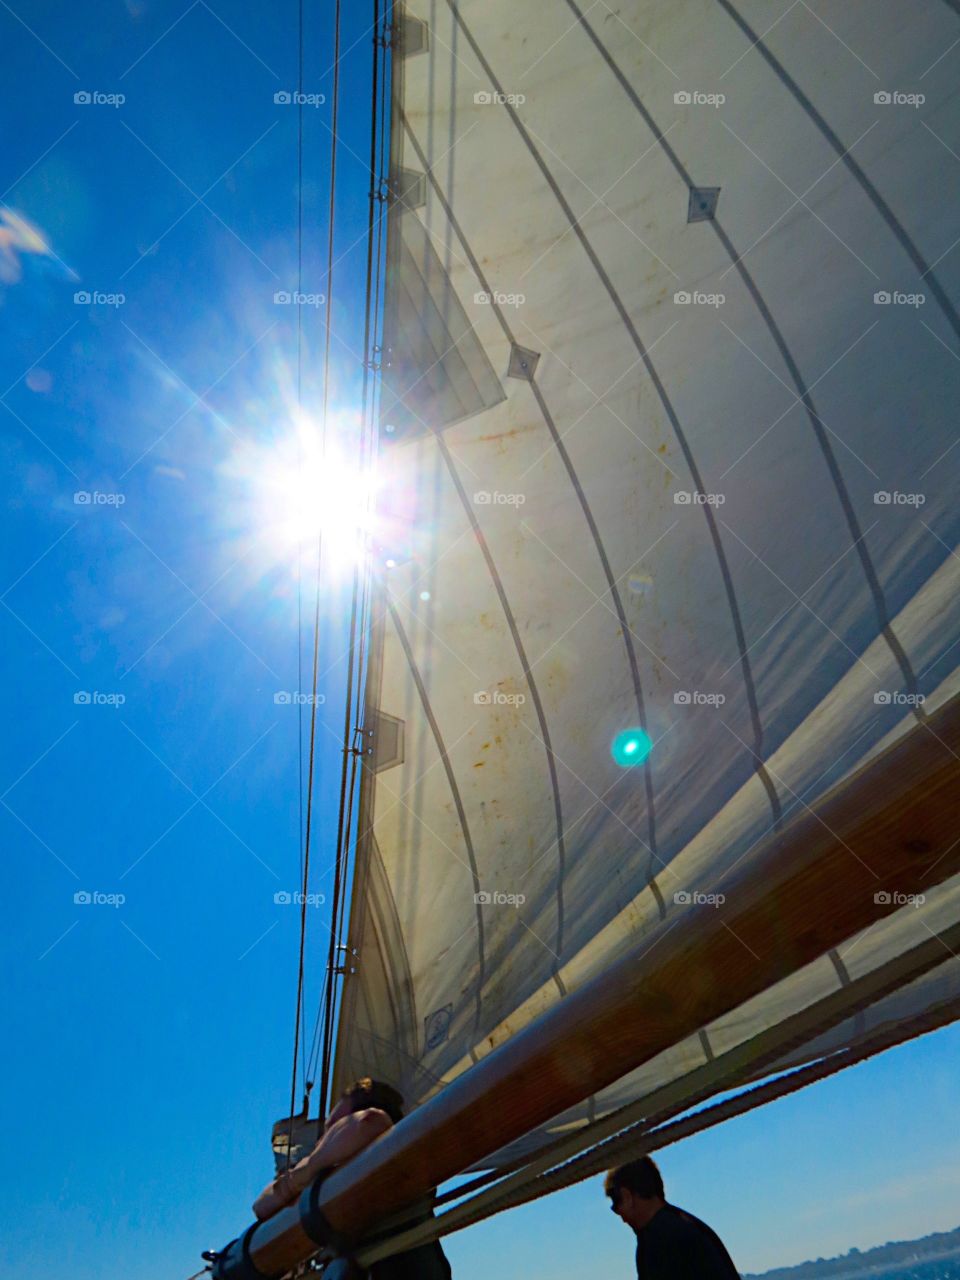 Sail in the sun